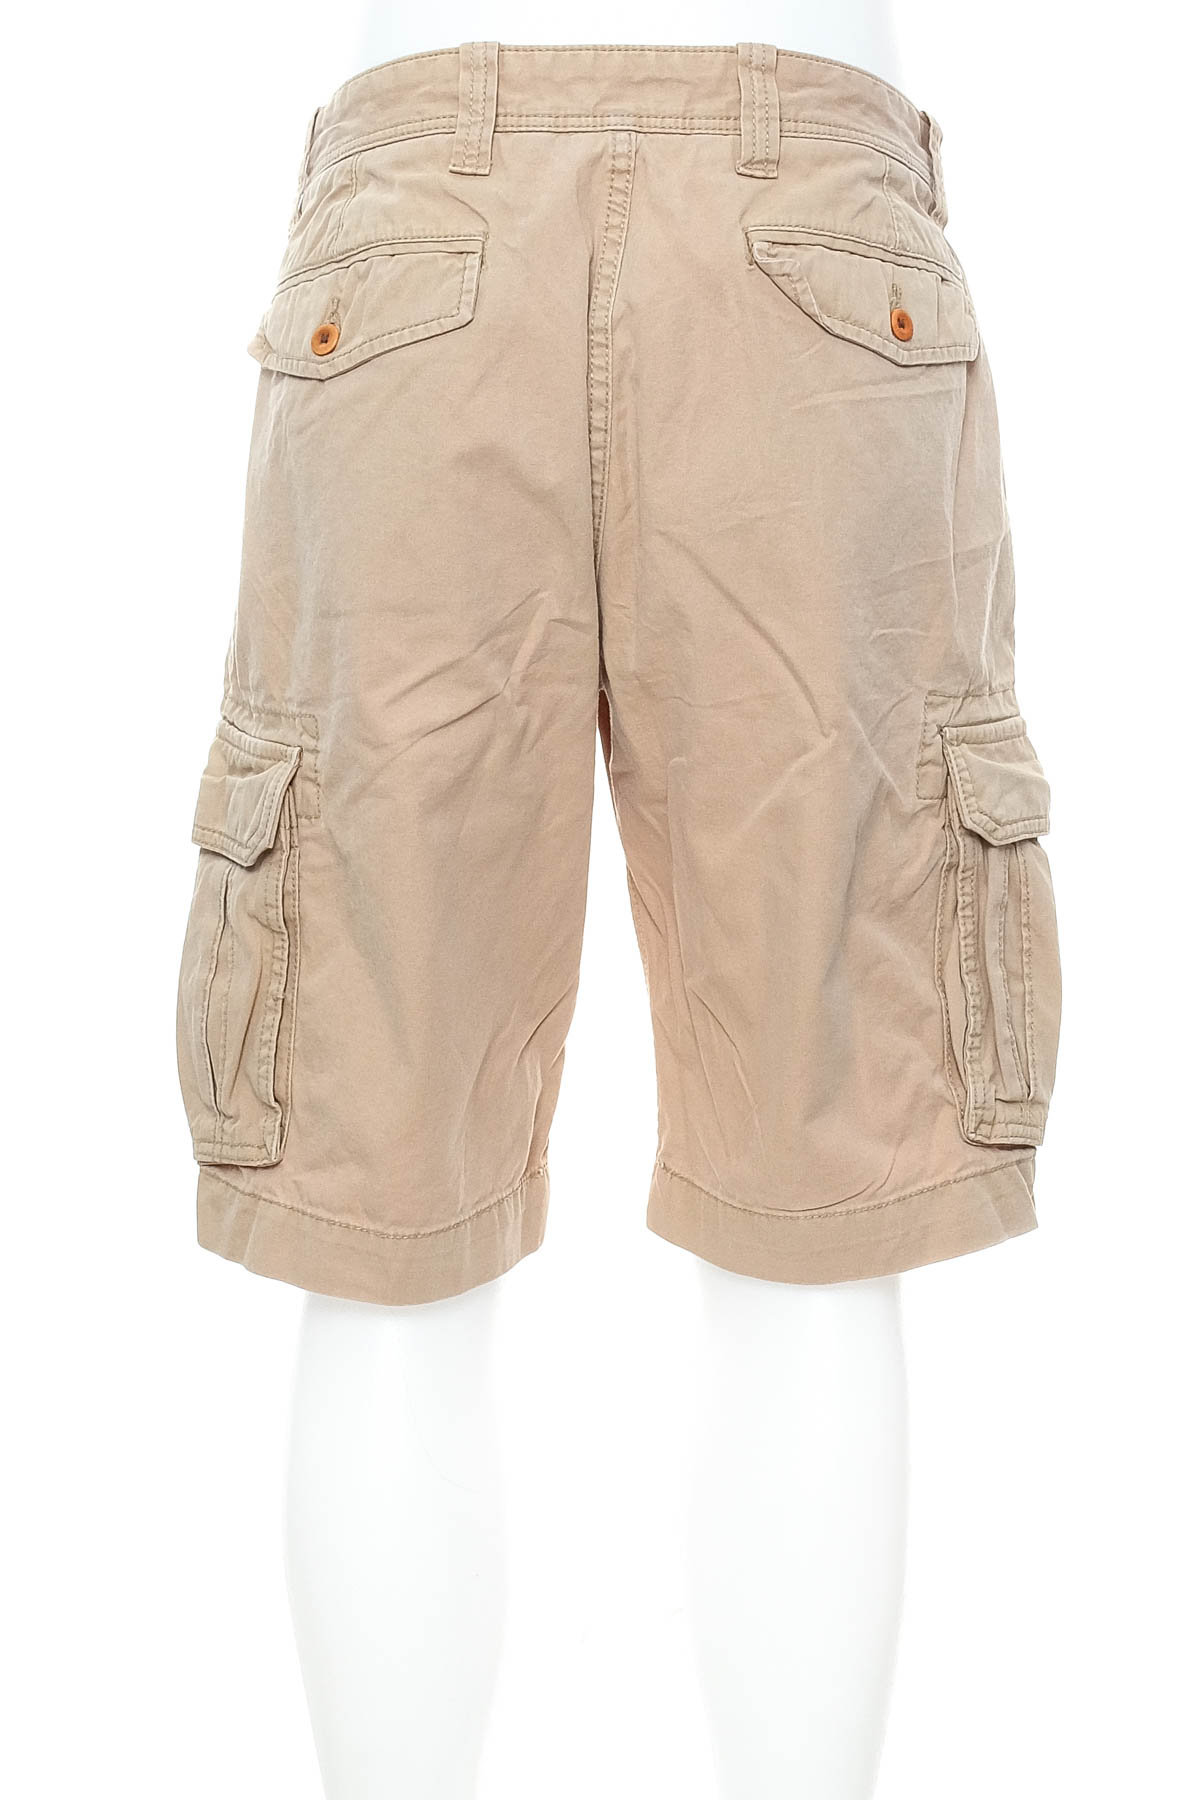 Men's shorts - TOMMY HILFIGER - 1